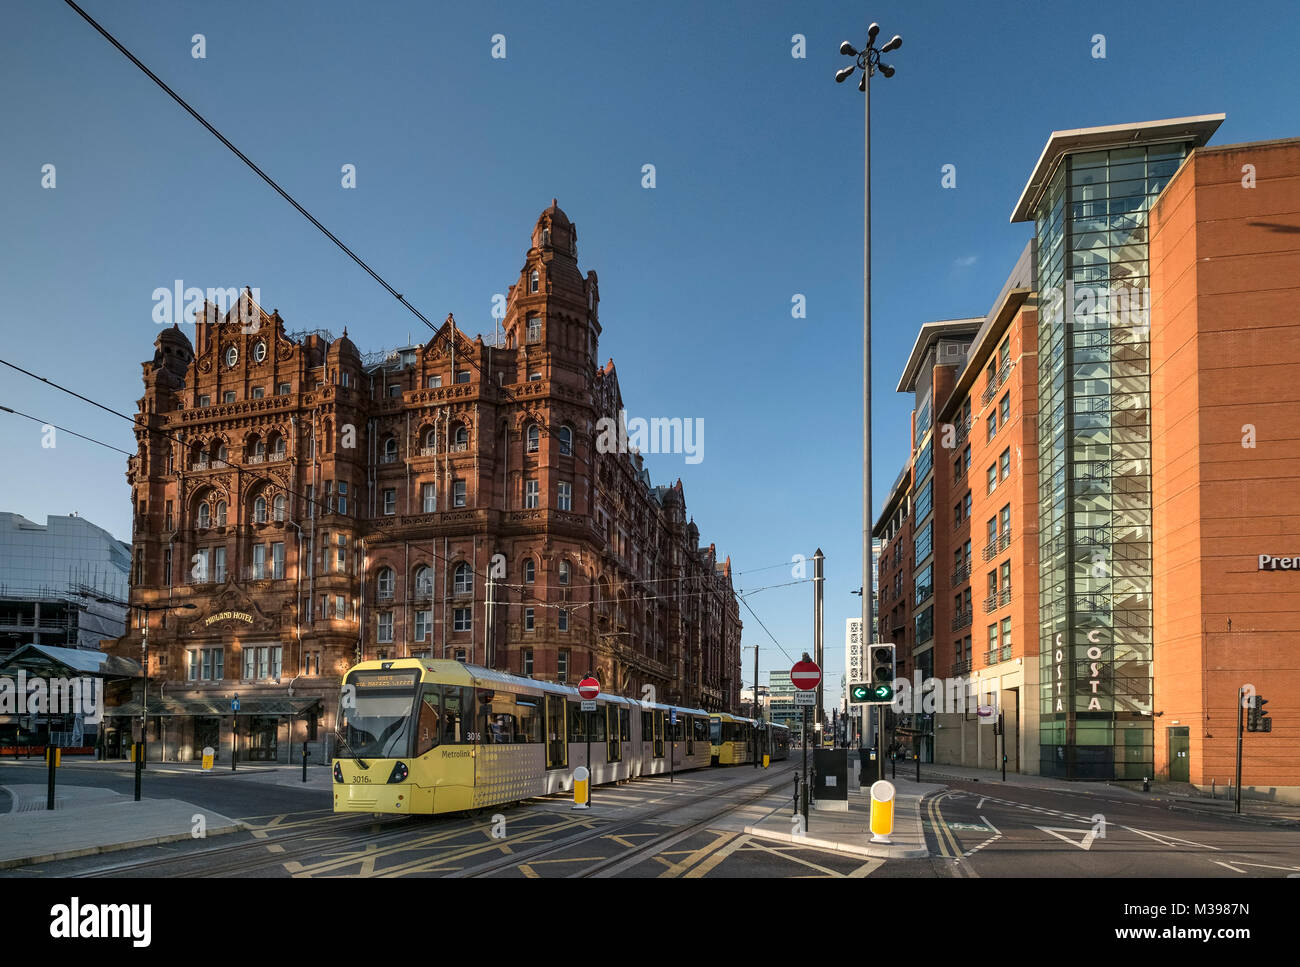 El tranvía Metrolink pasando el Midland Hotel, Centro de la ciudad de Manchester, Greater Manchester, Inglaterra, Reino Unido. Foto de stock